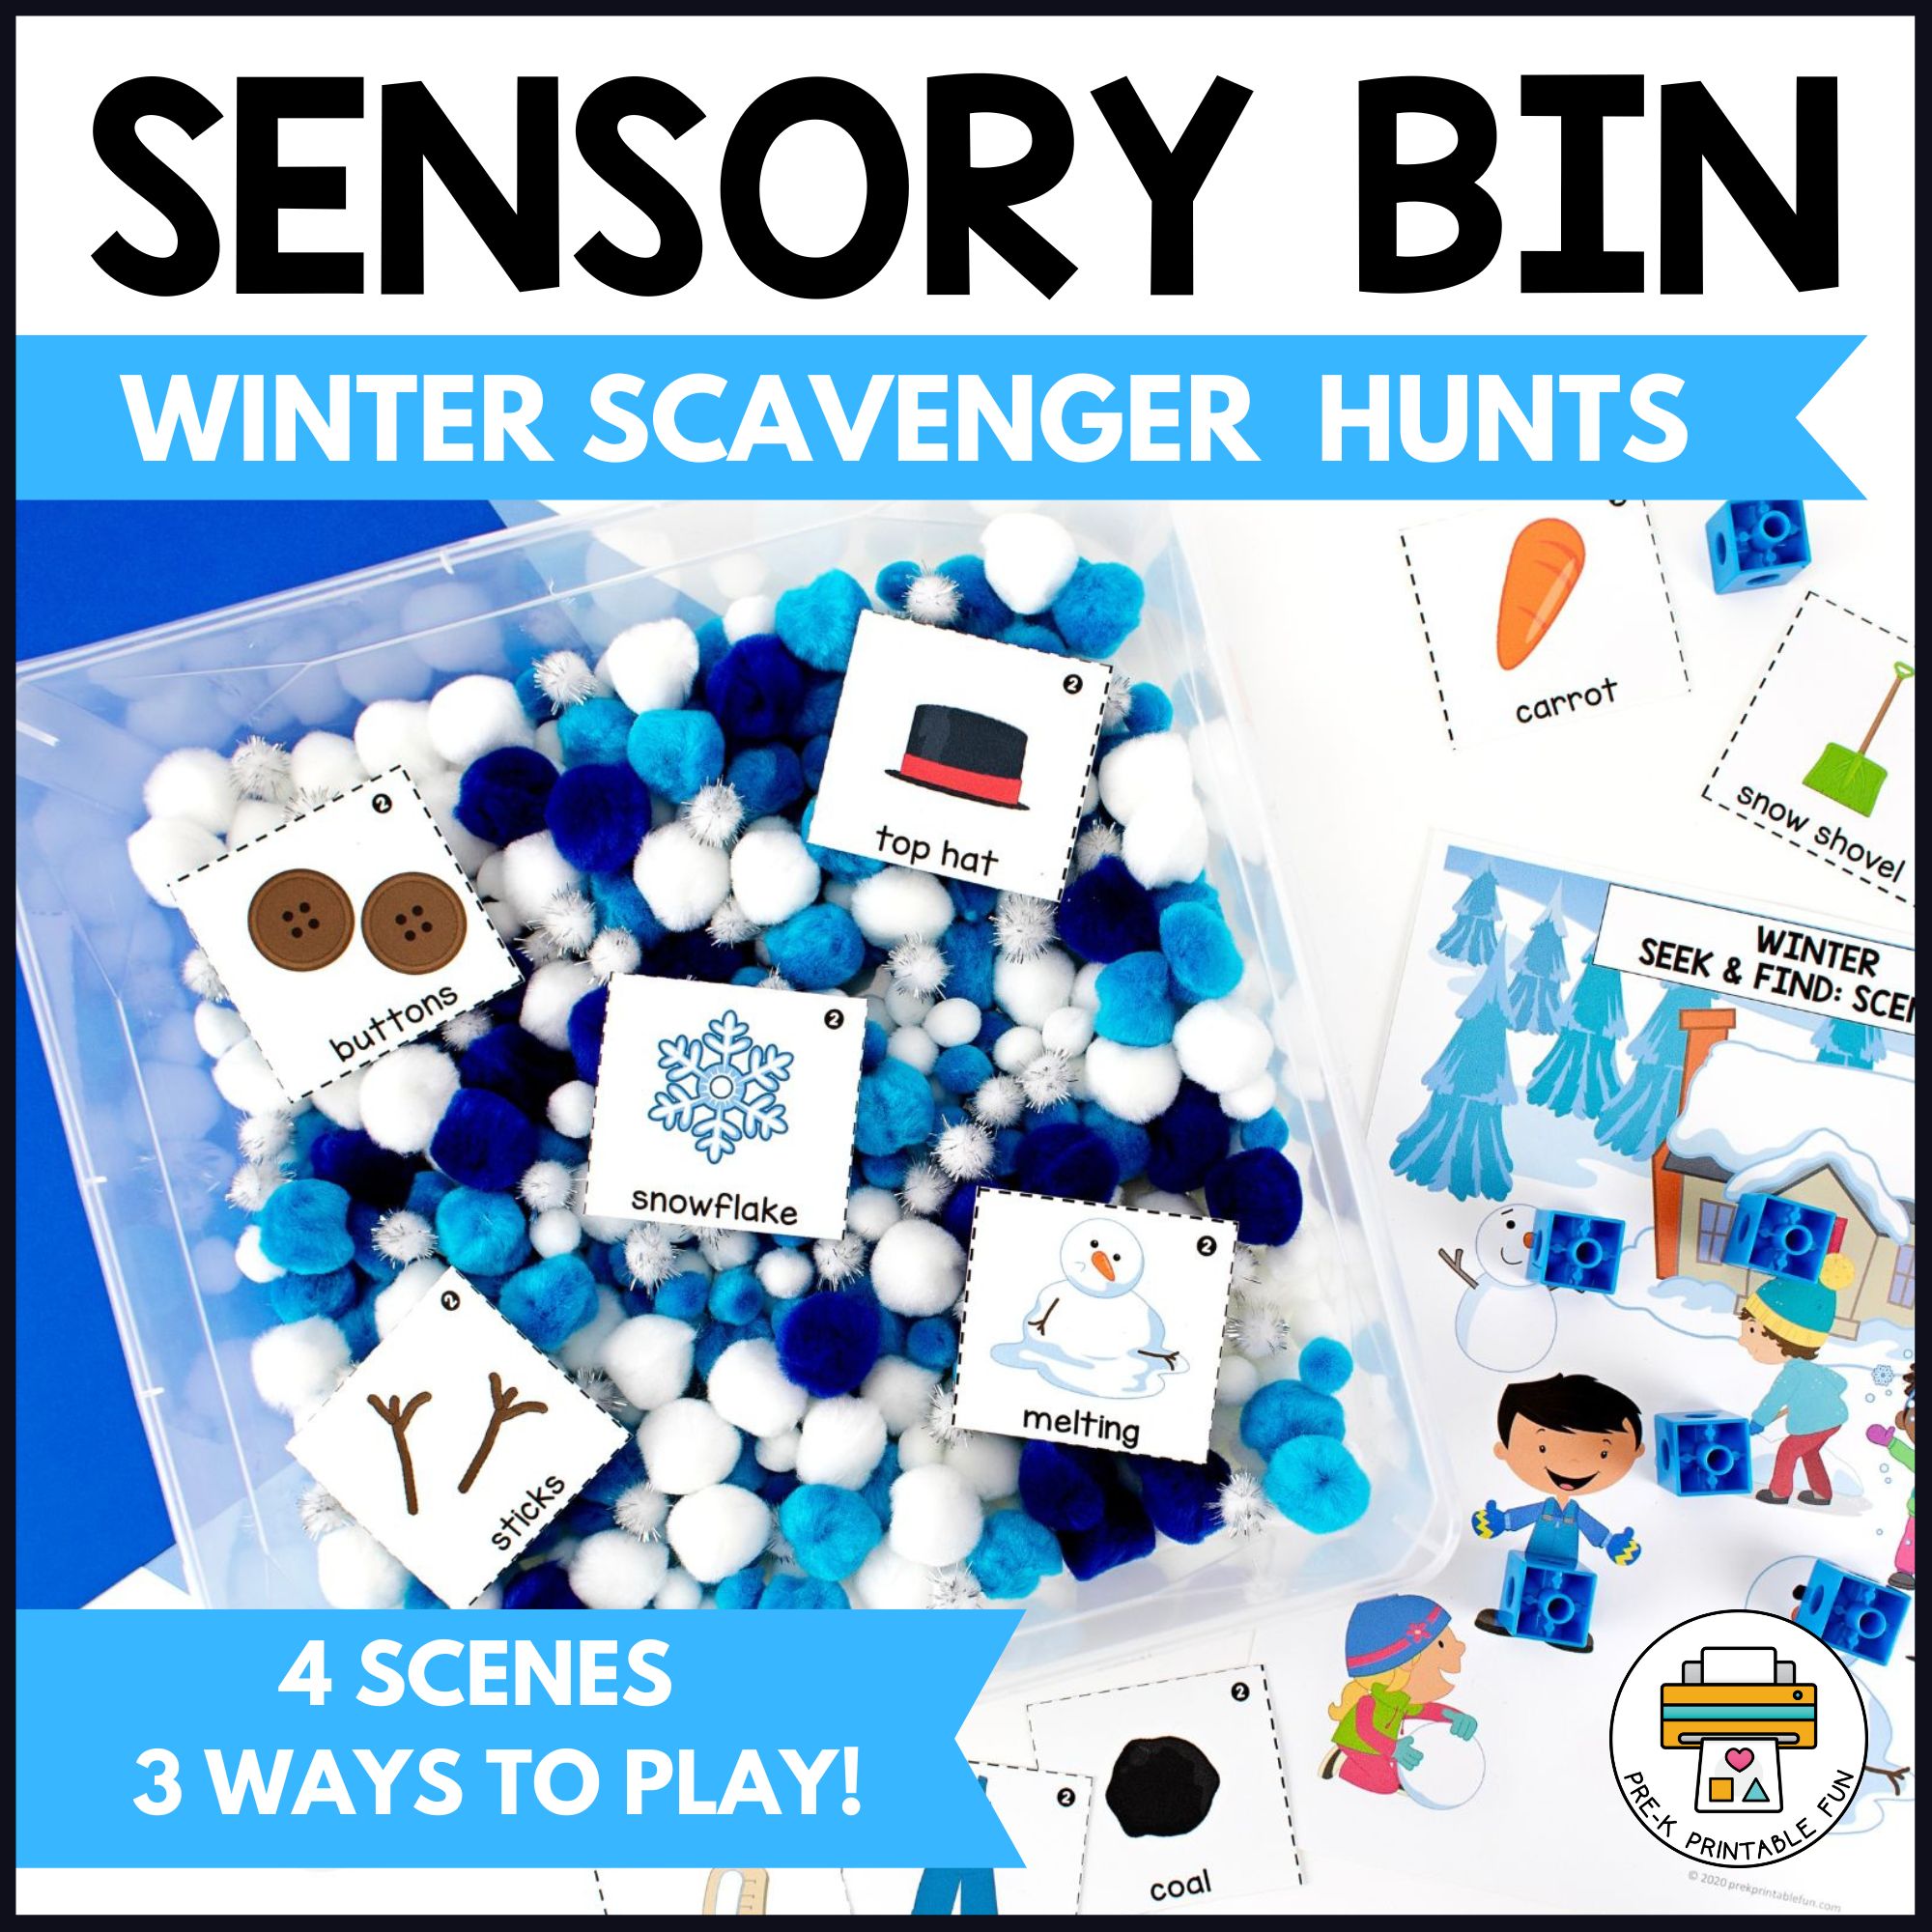 Winter Sensory Bin